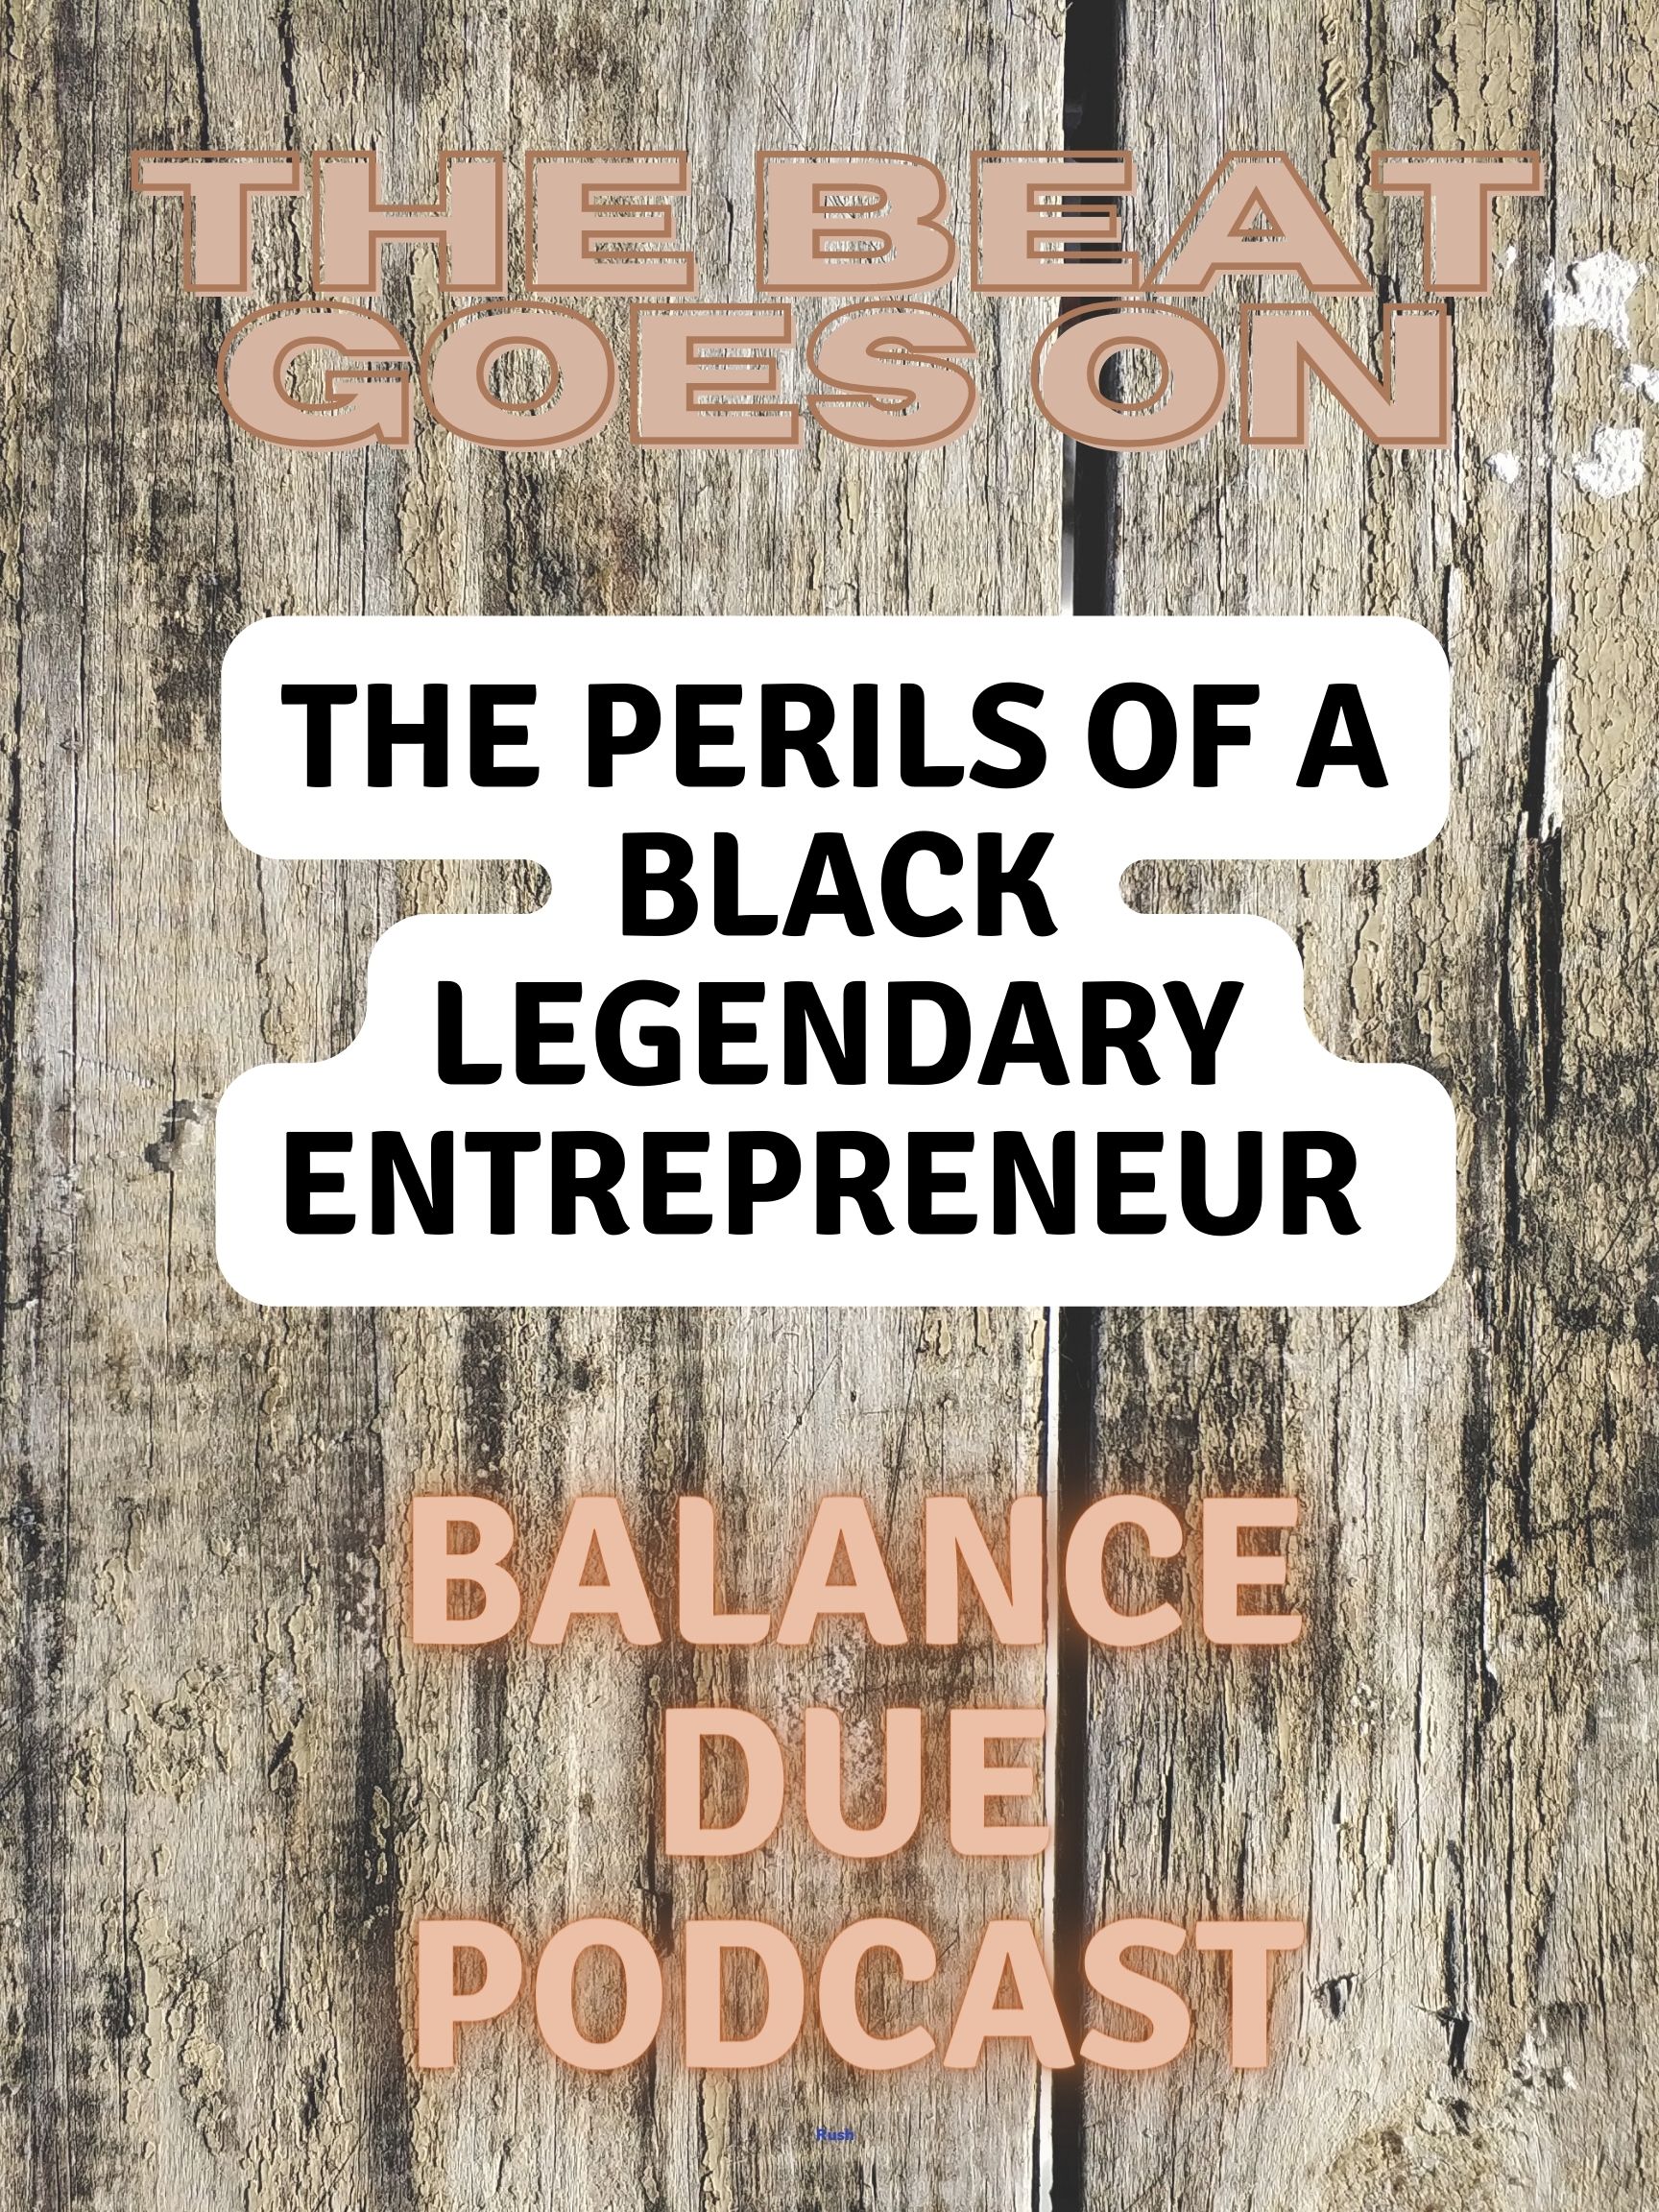 Black Entrepreneurs